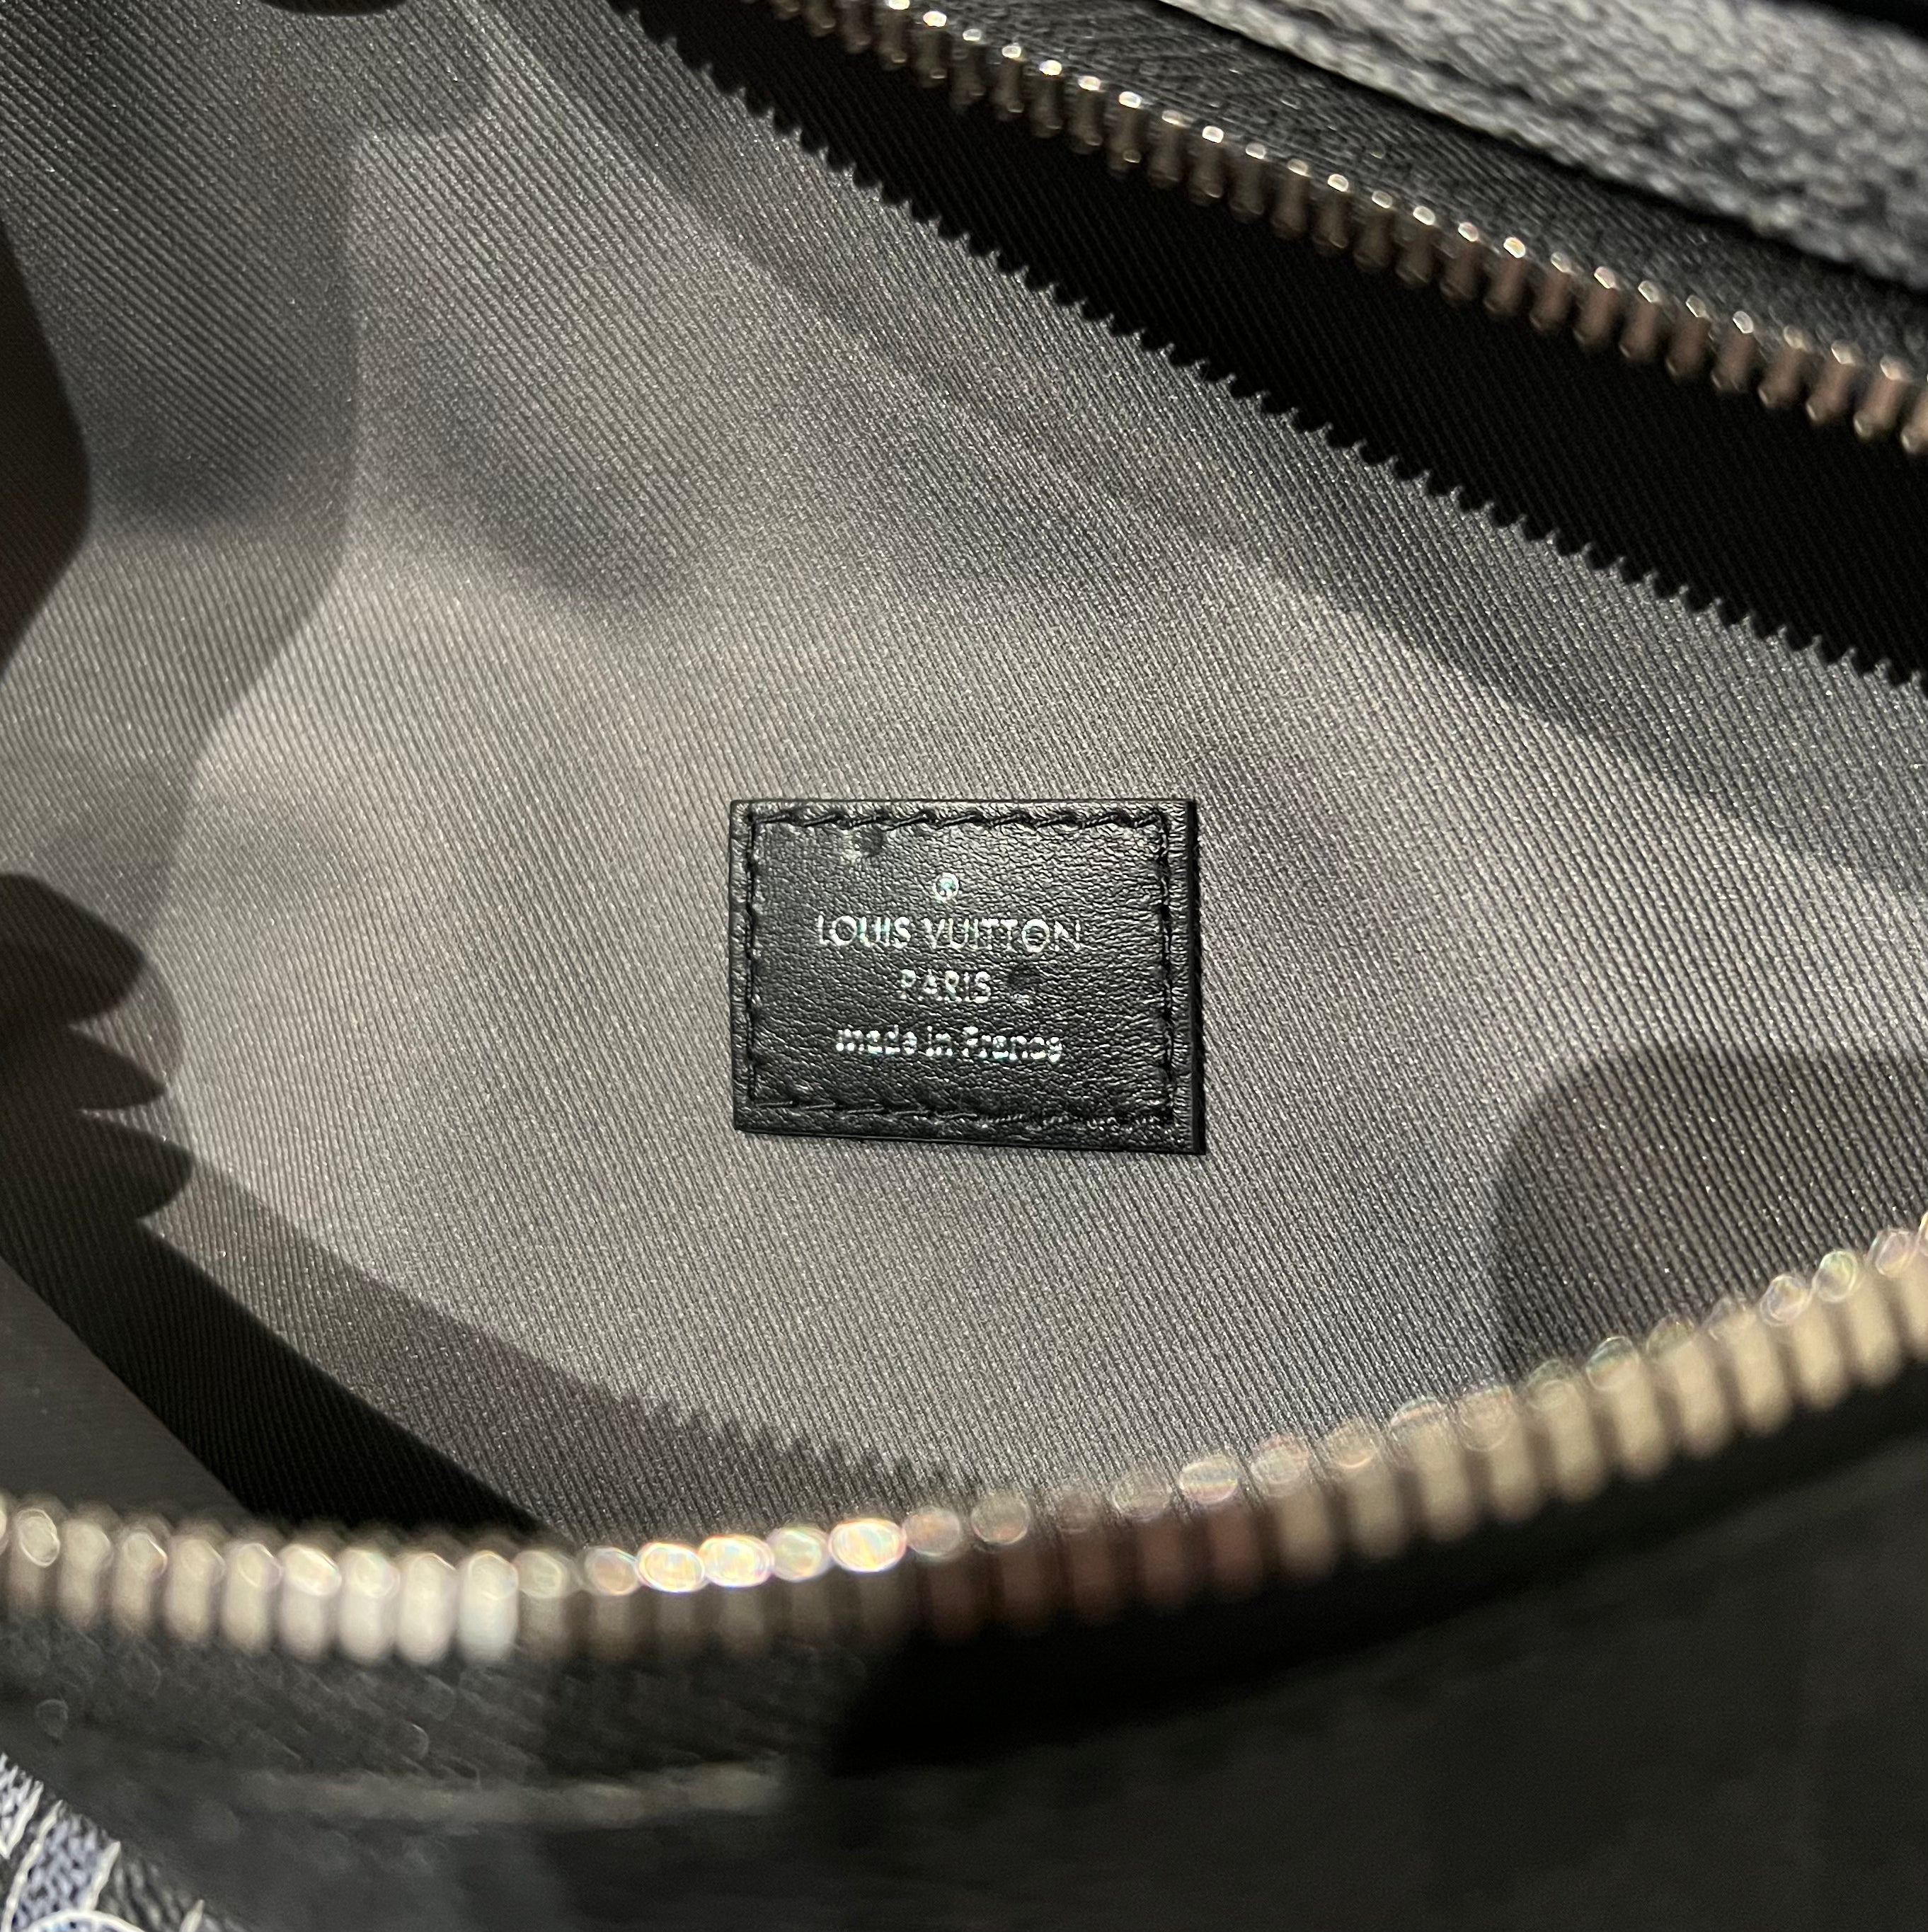 Louis Vuitton Virgil Abloh Damier Graphite Campus Bum Bag (x)